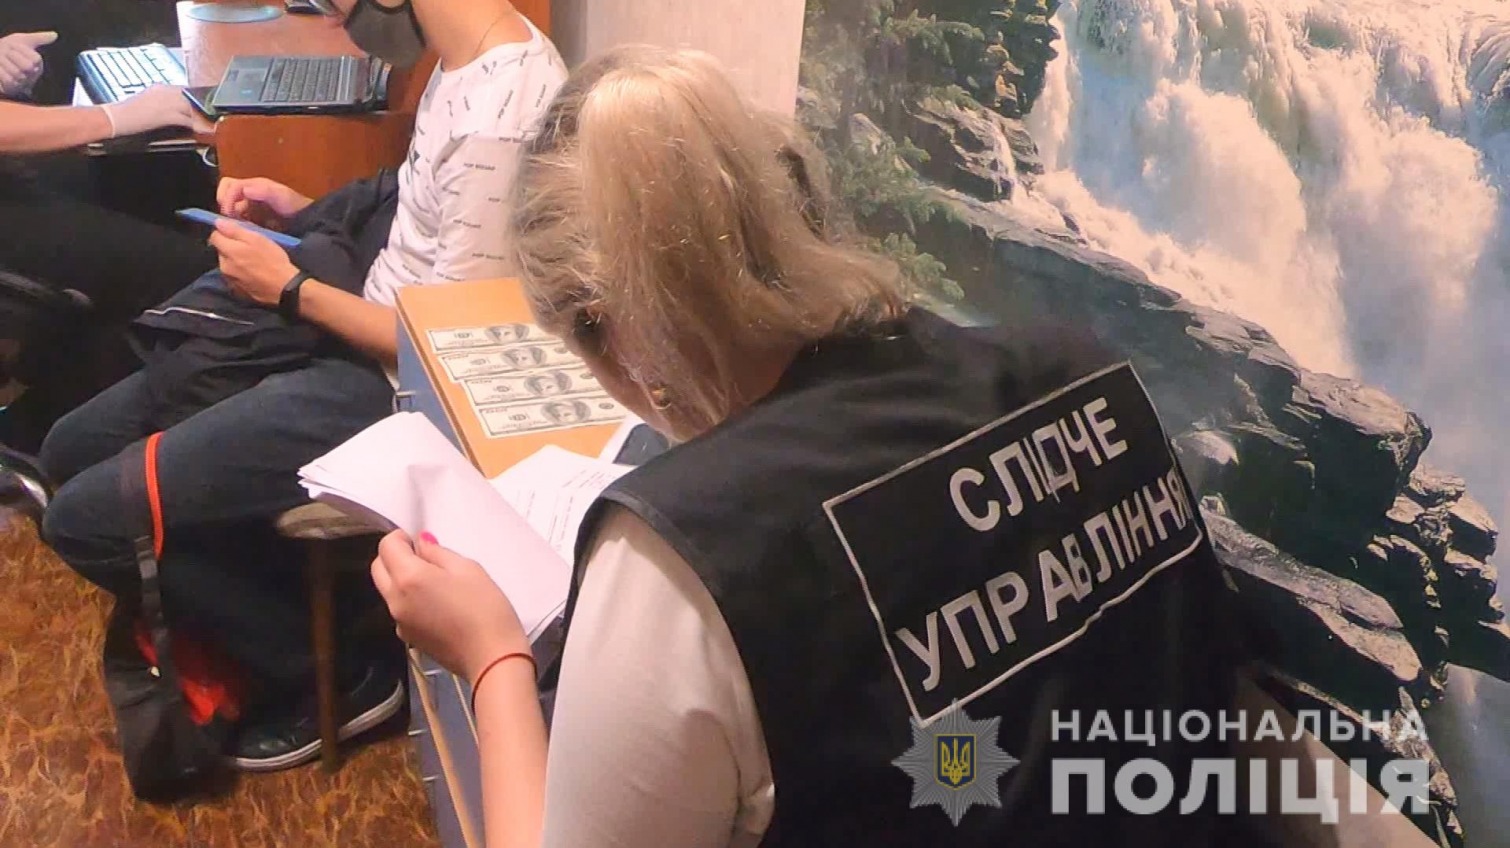 В Одессе и Черноморске задержали распространителей детской порнографии (фото, видео) «фото»